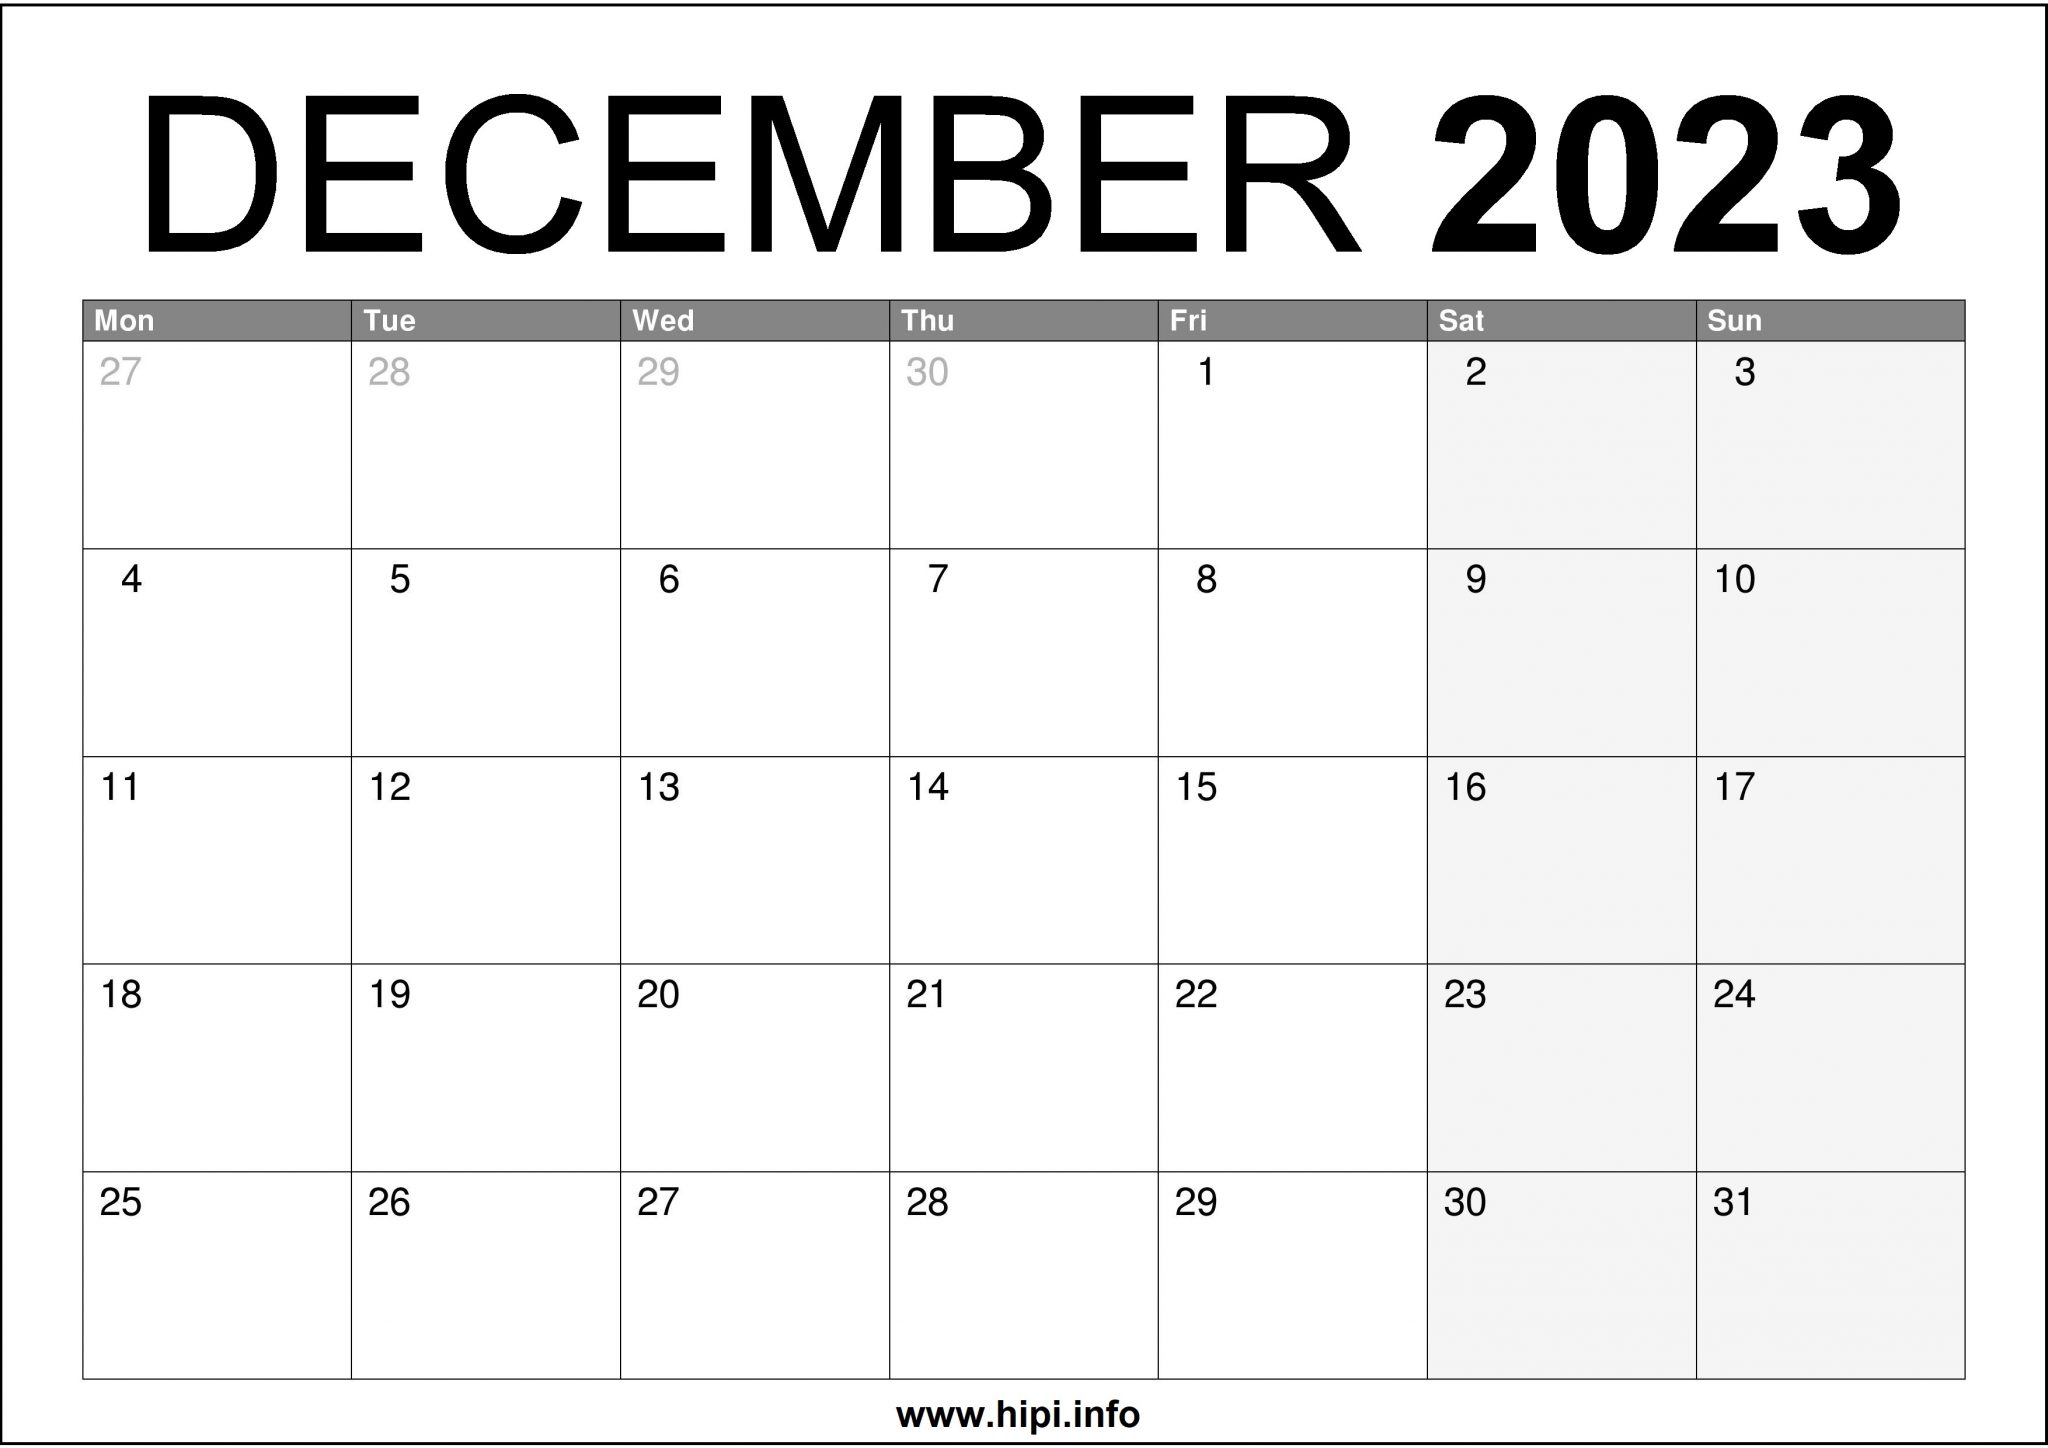 december-2023-uk-calendar-a4-size-free-hipi-info